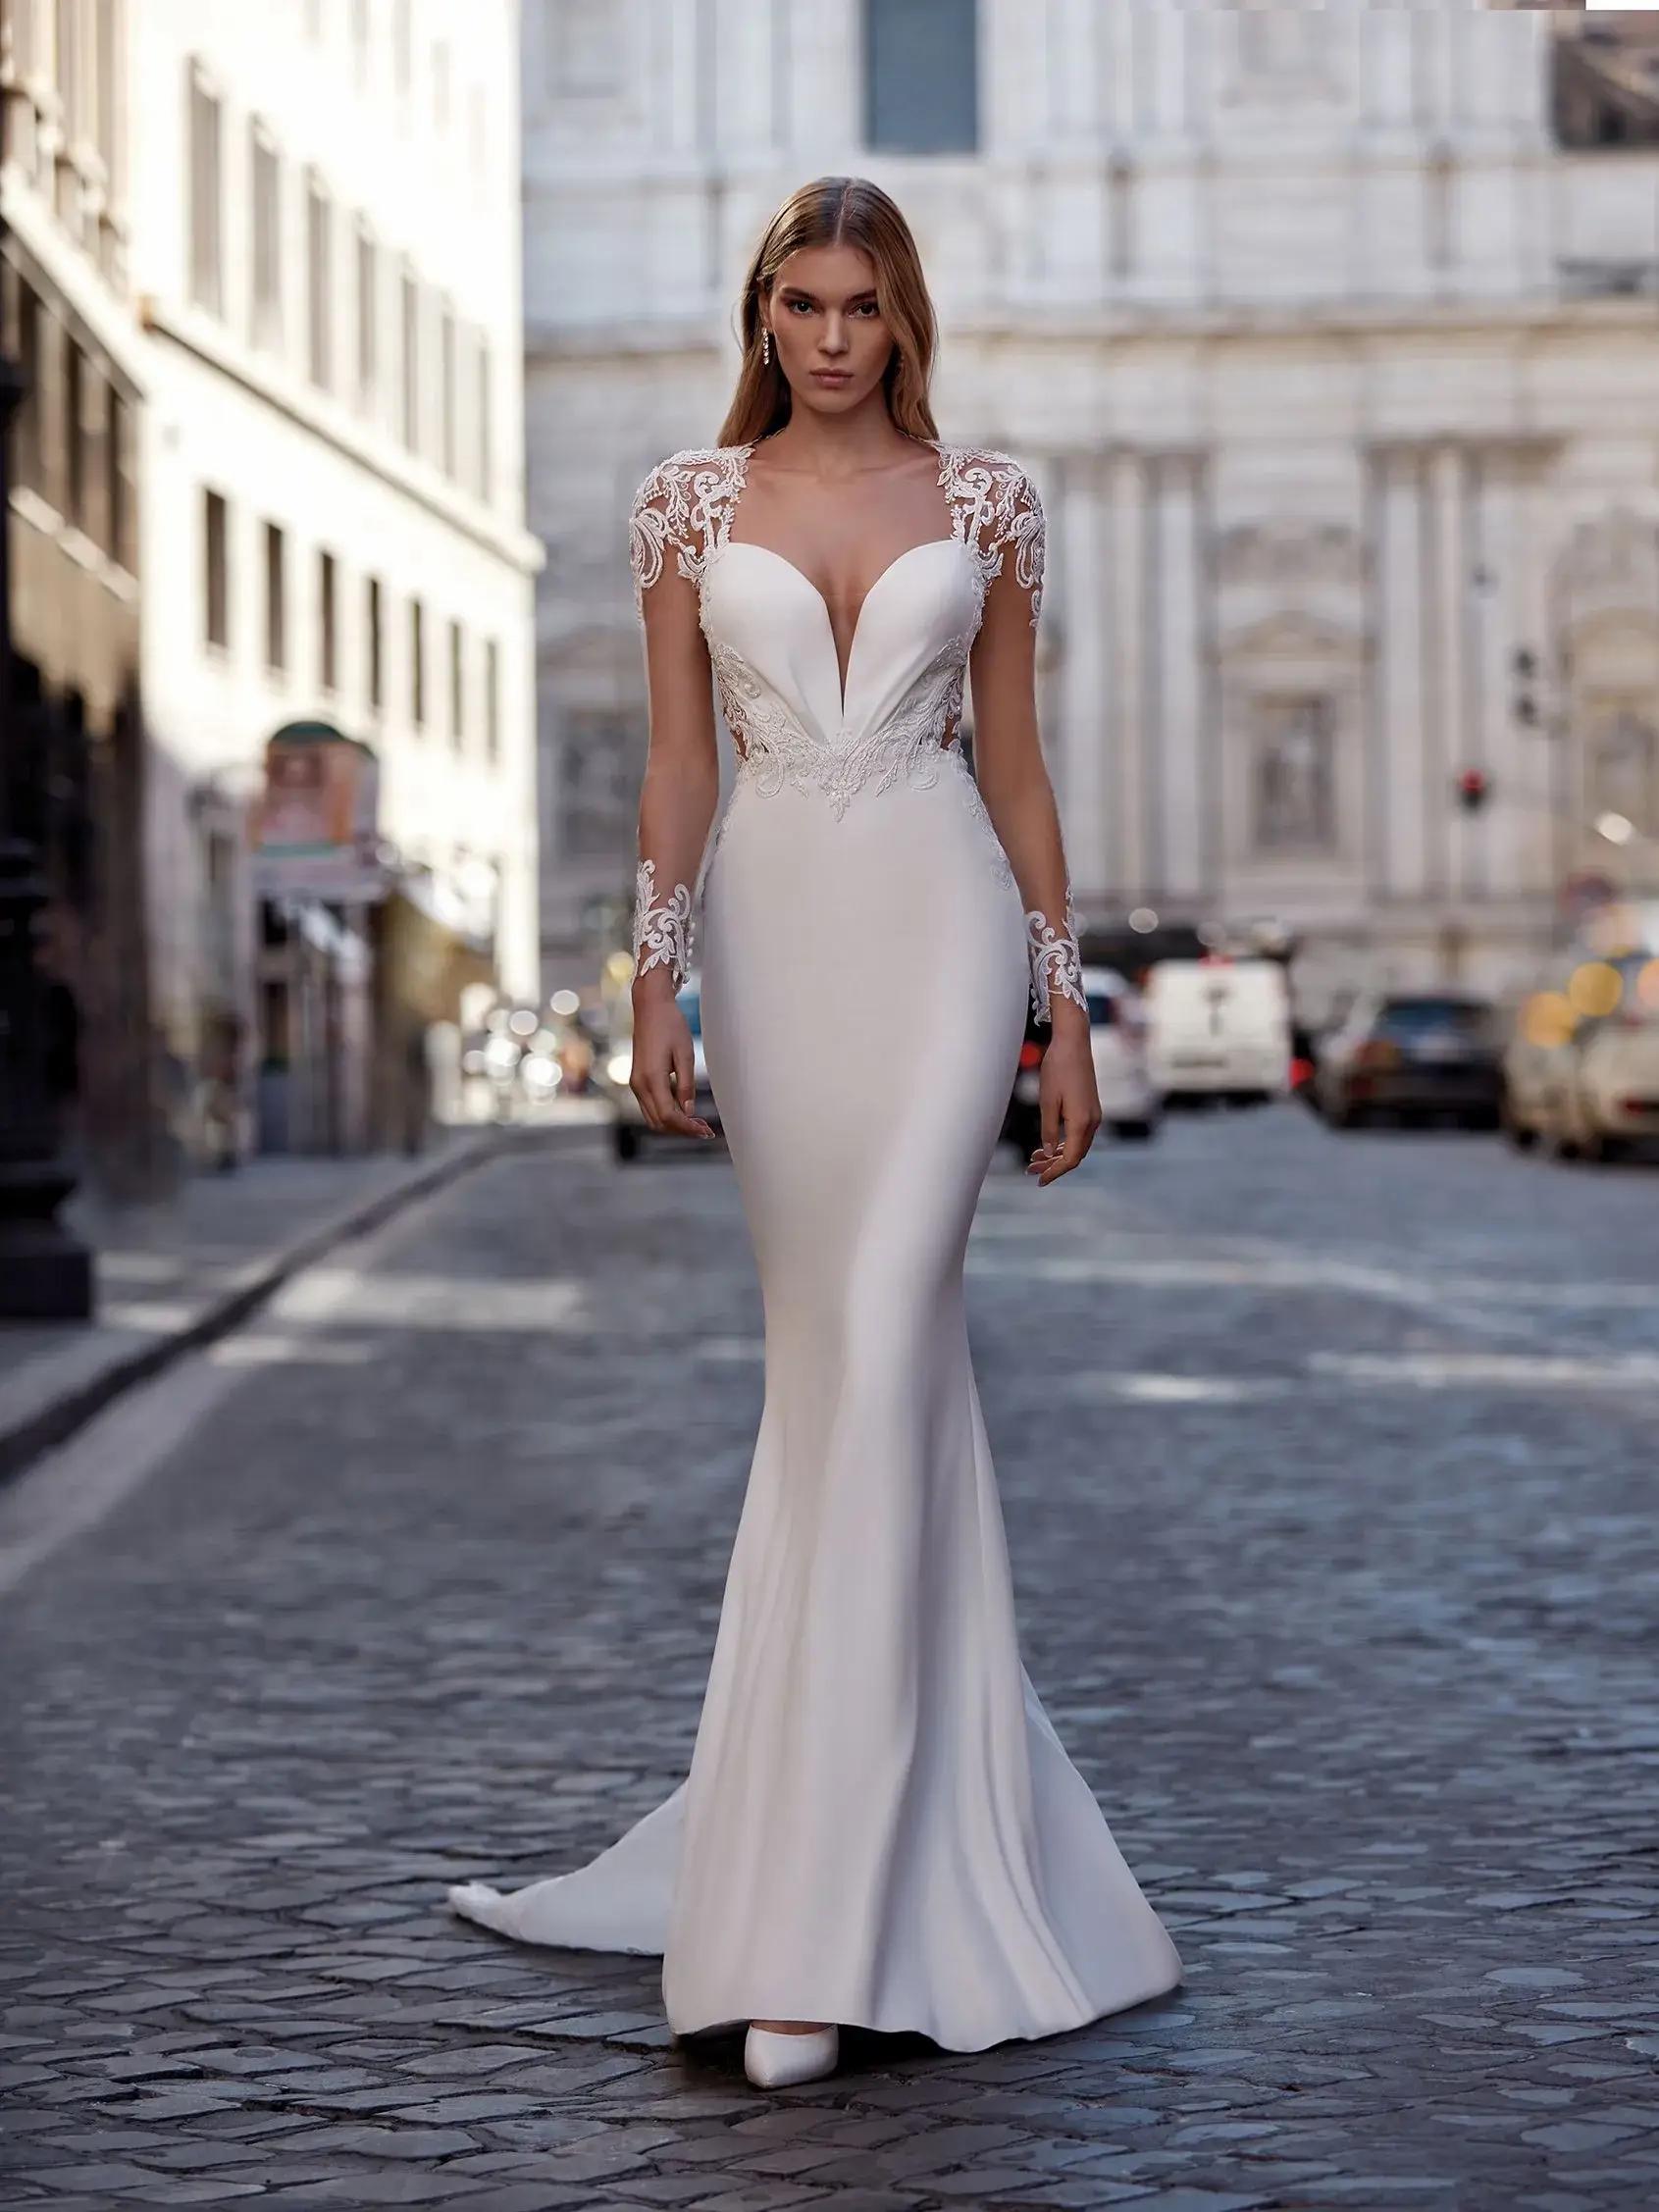 Nicole Milano Harper bridal gown